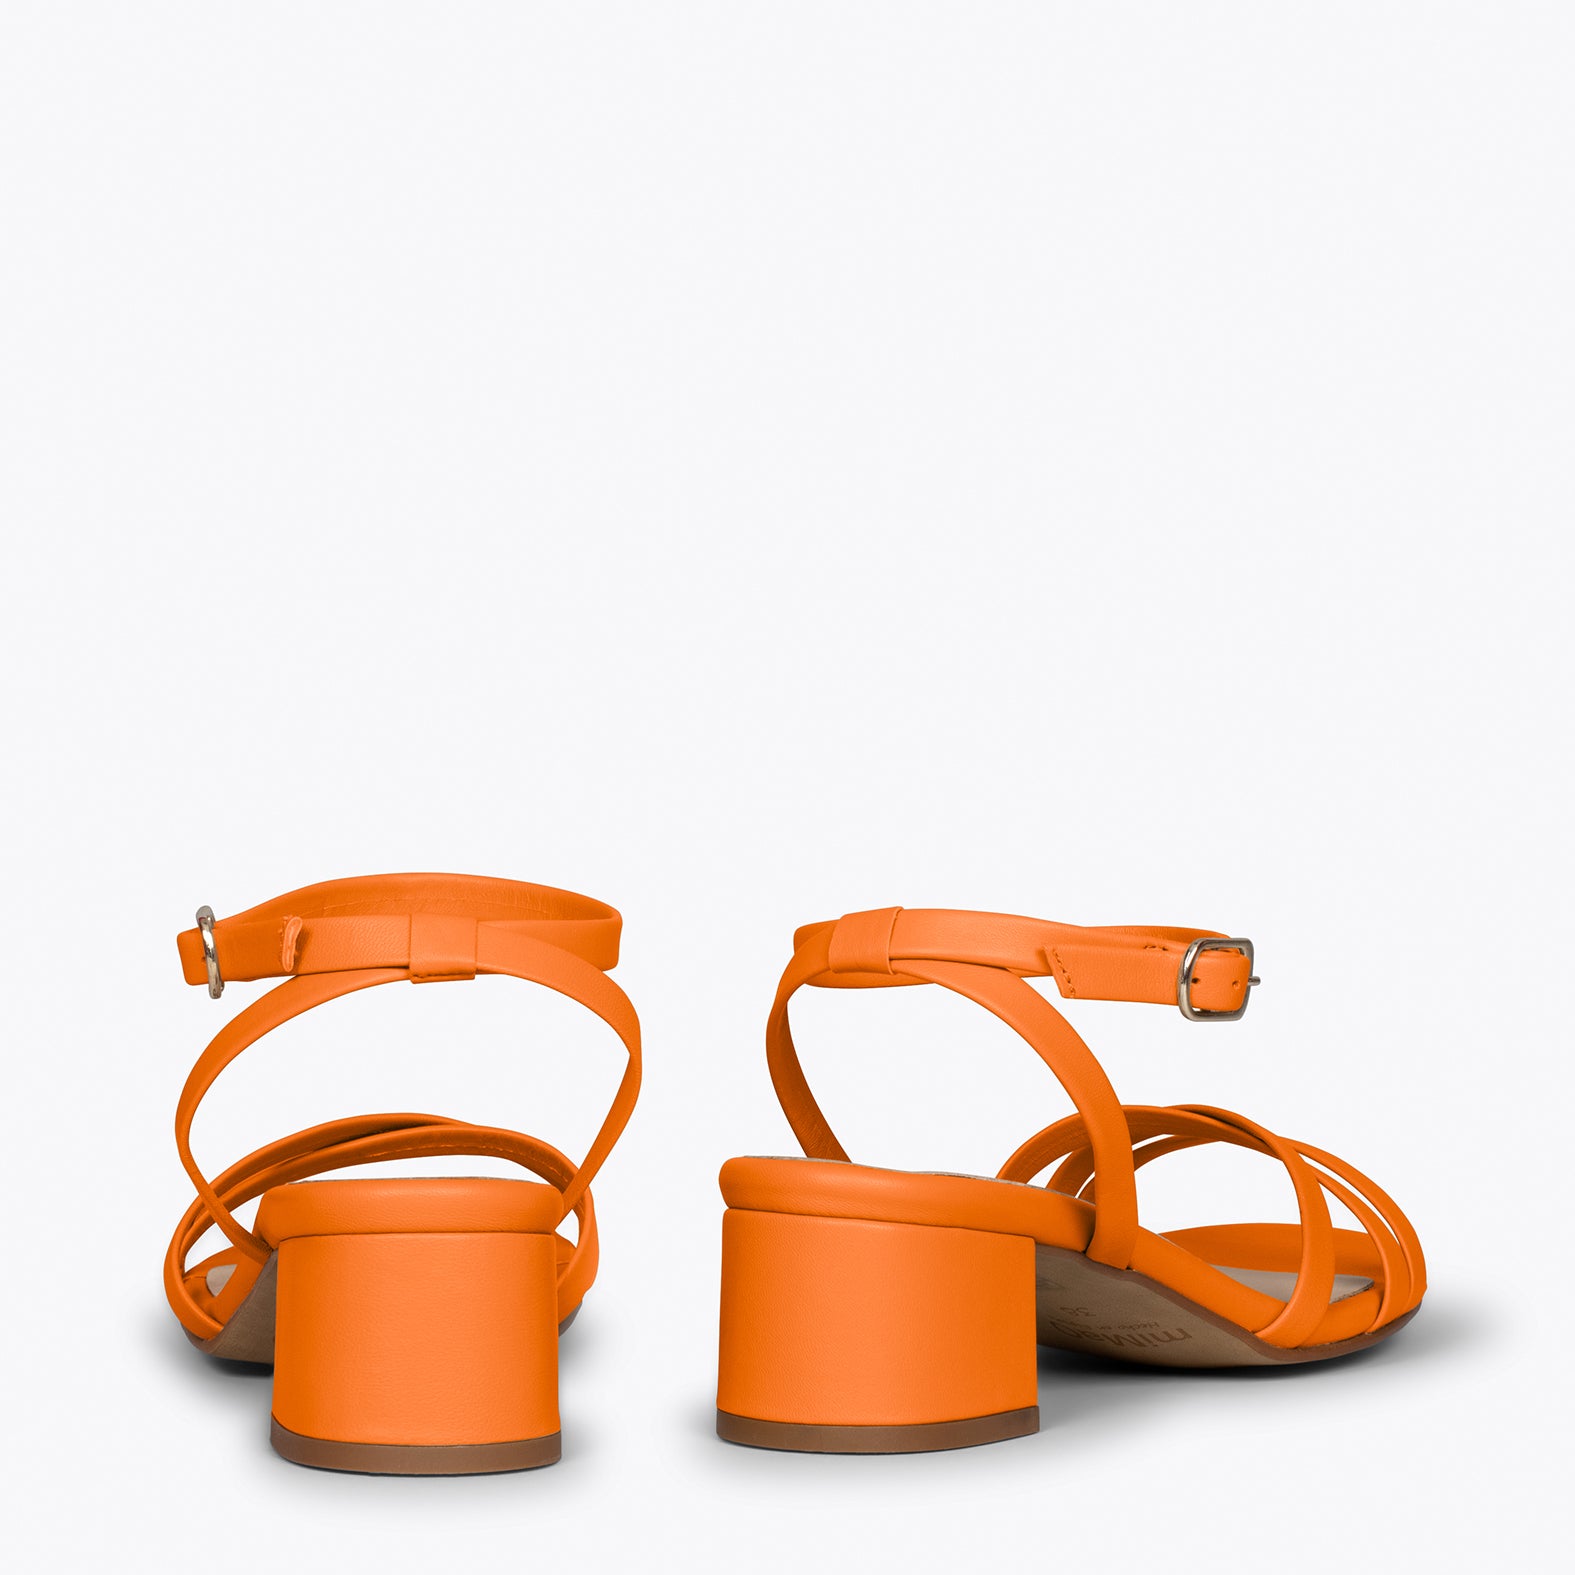 VIENA – ORANGE sandals with straps